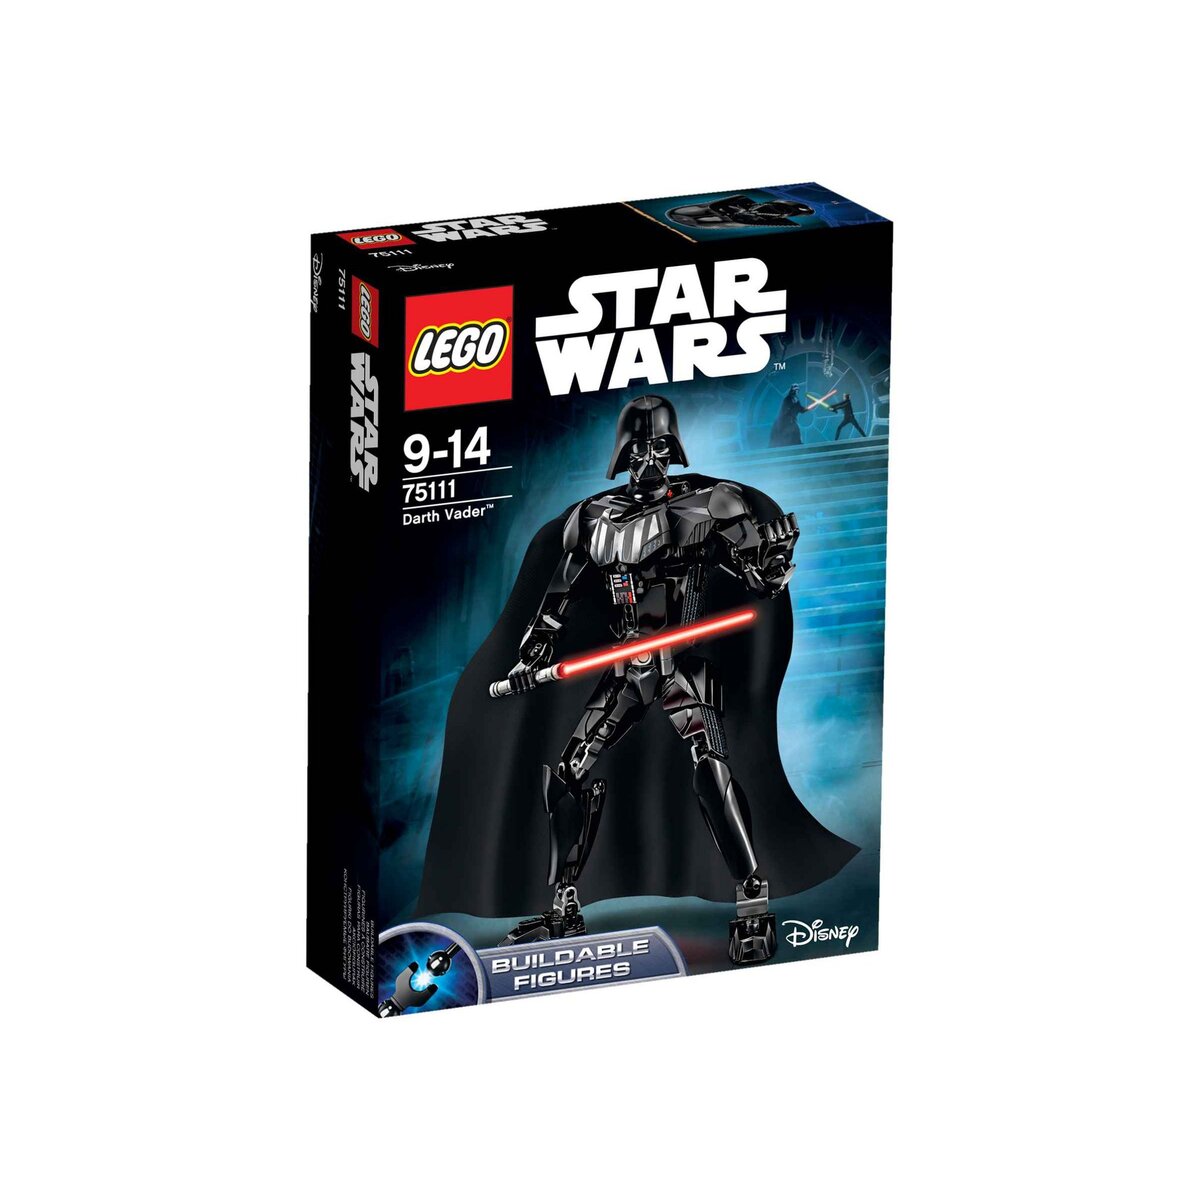 LEGO Star Wars 75111 - Darth Vador